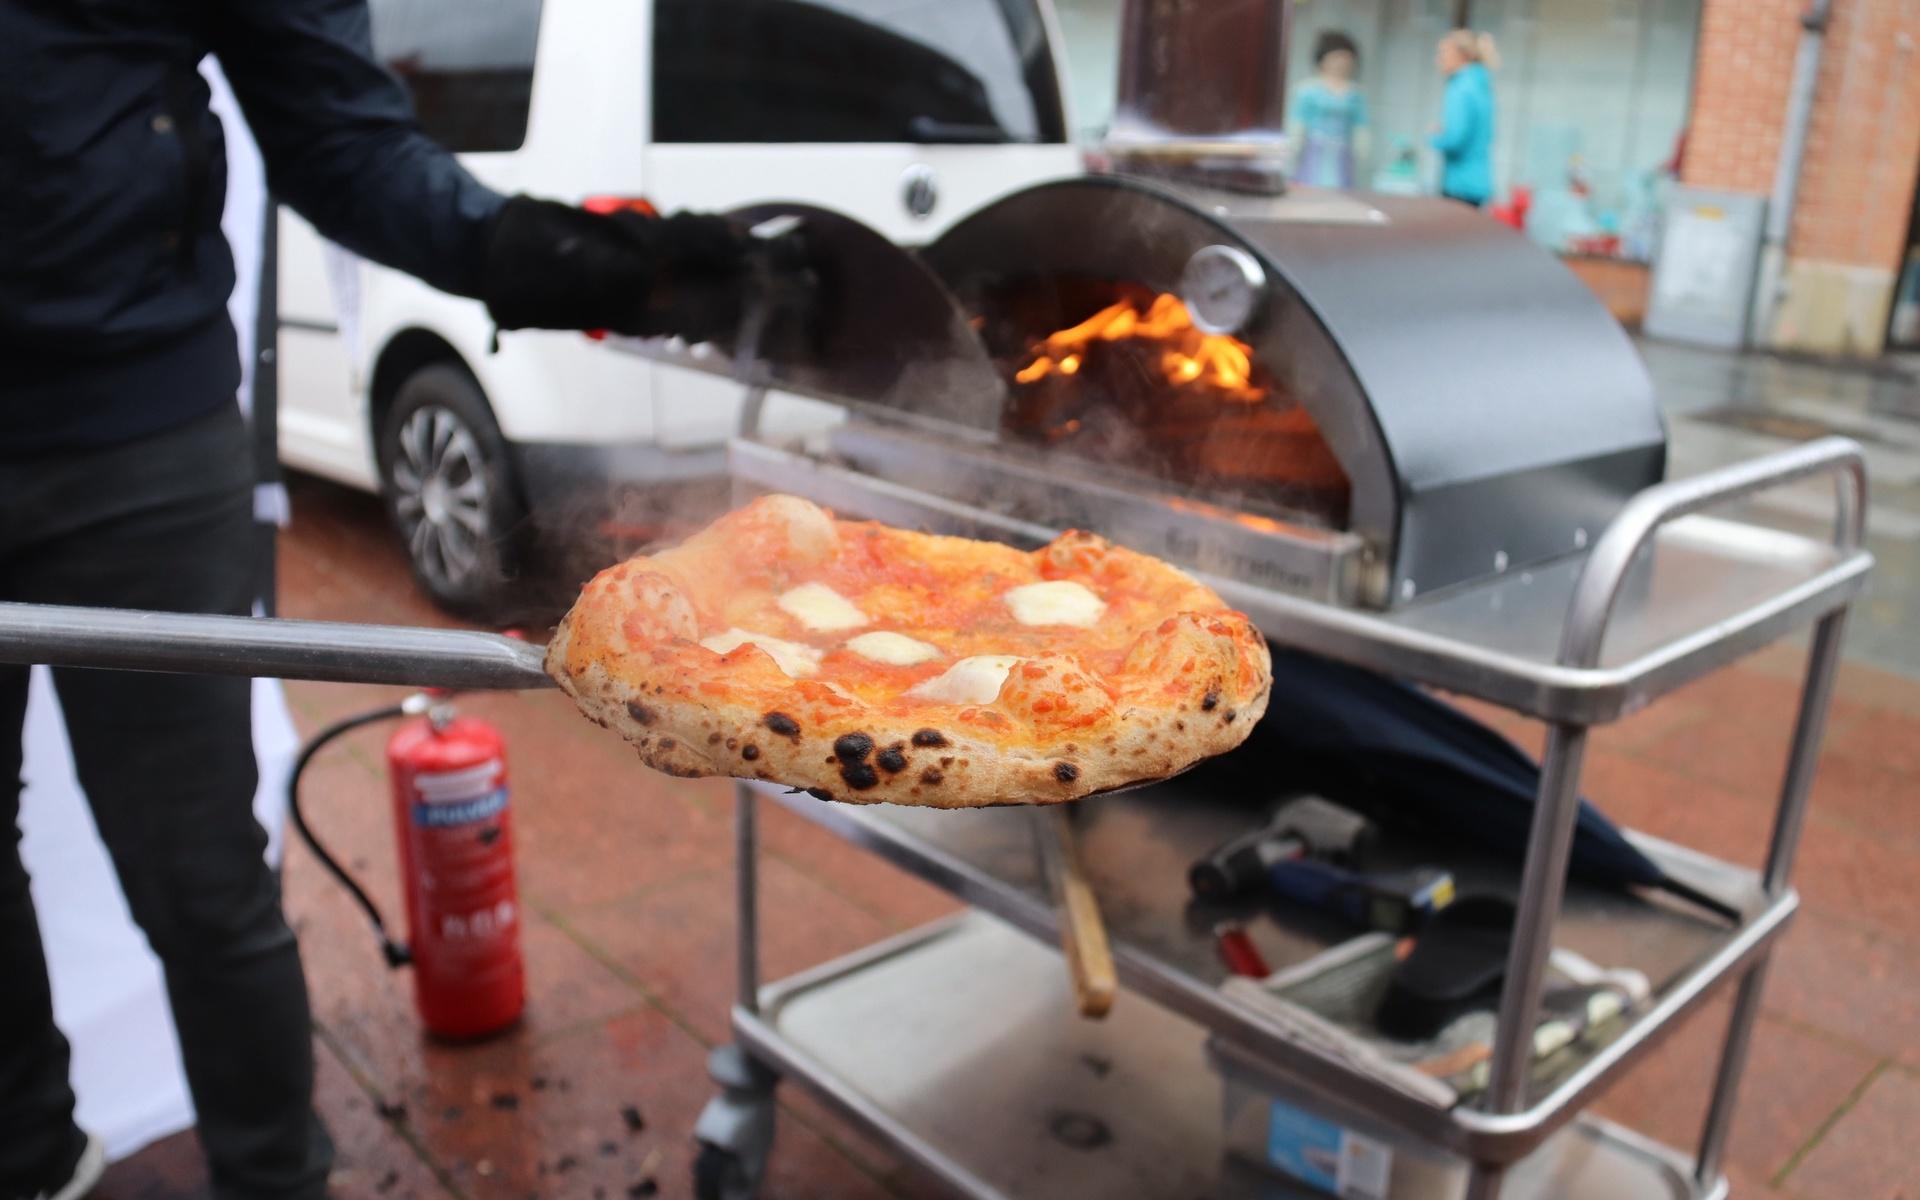 Napolitansk pizza med tomatsås, mozzarella och lite parmesan.